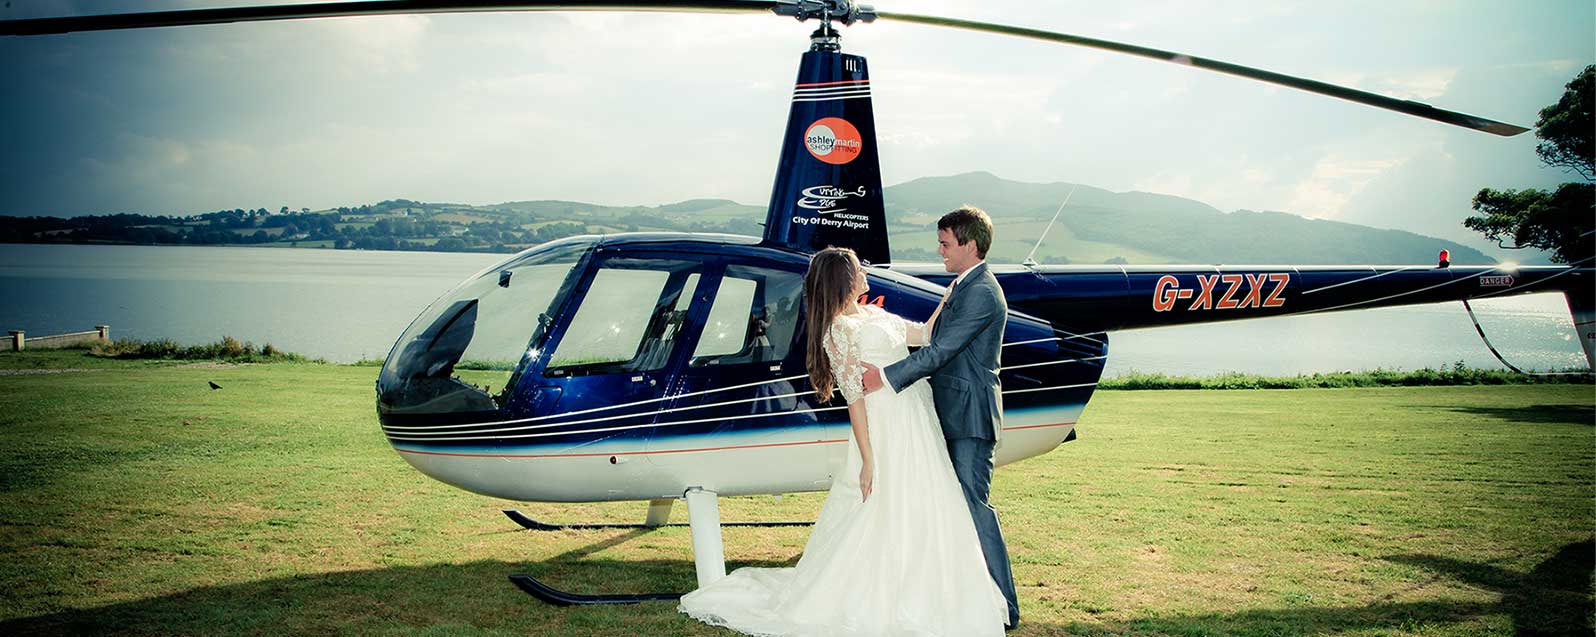 Helicopter Wedding 